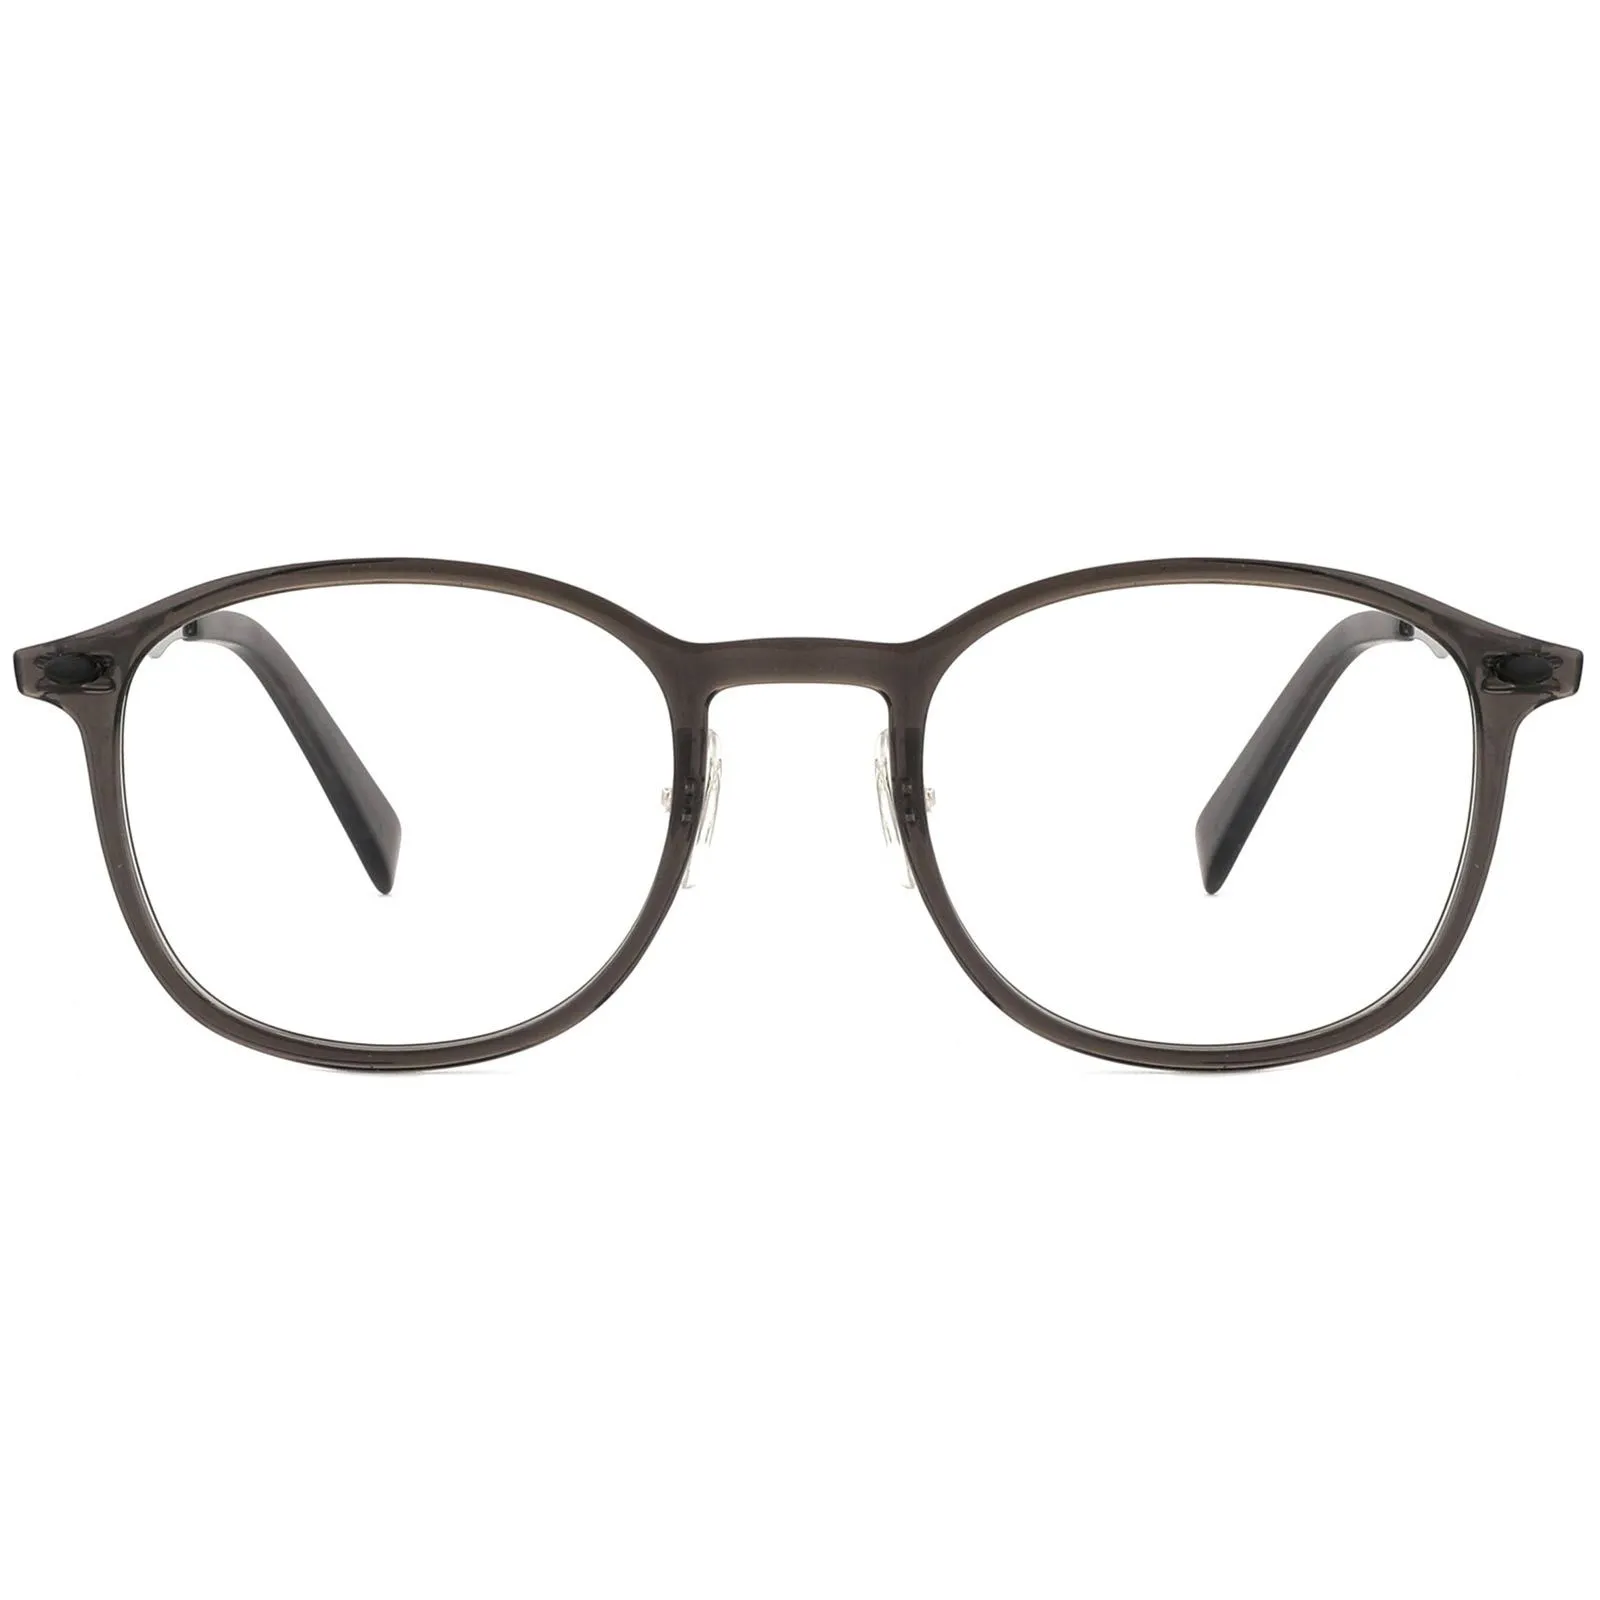 Church - Oval Black Reading glasses for Men & Women